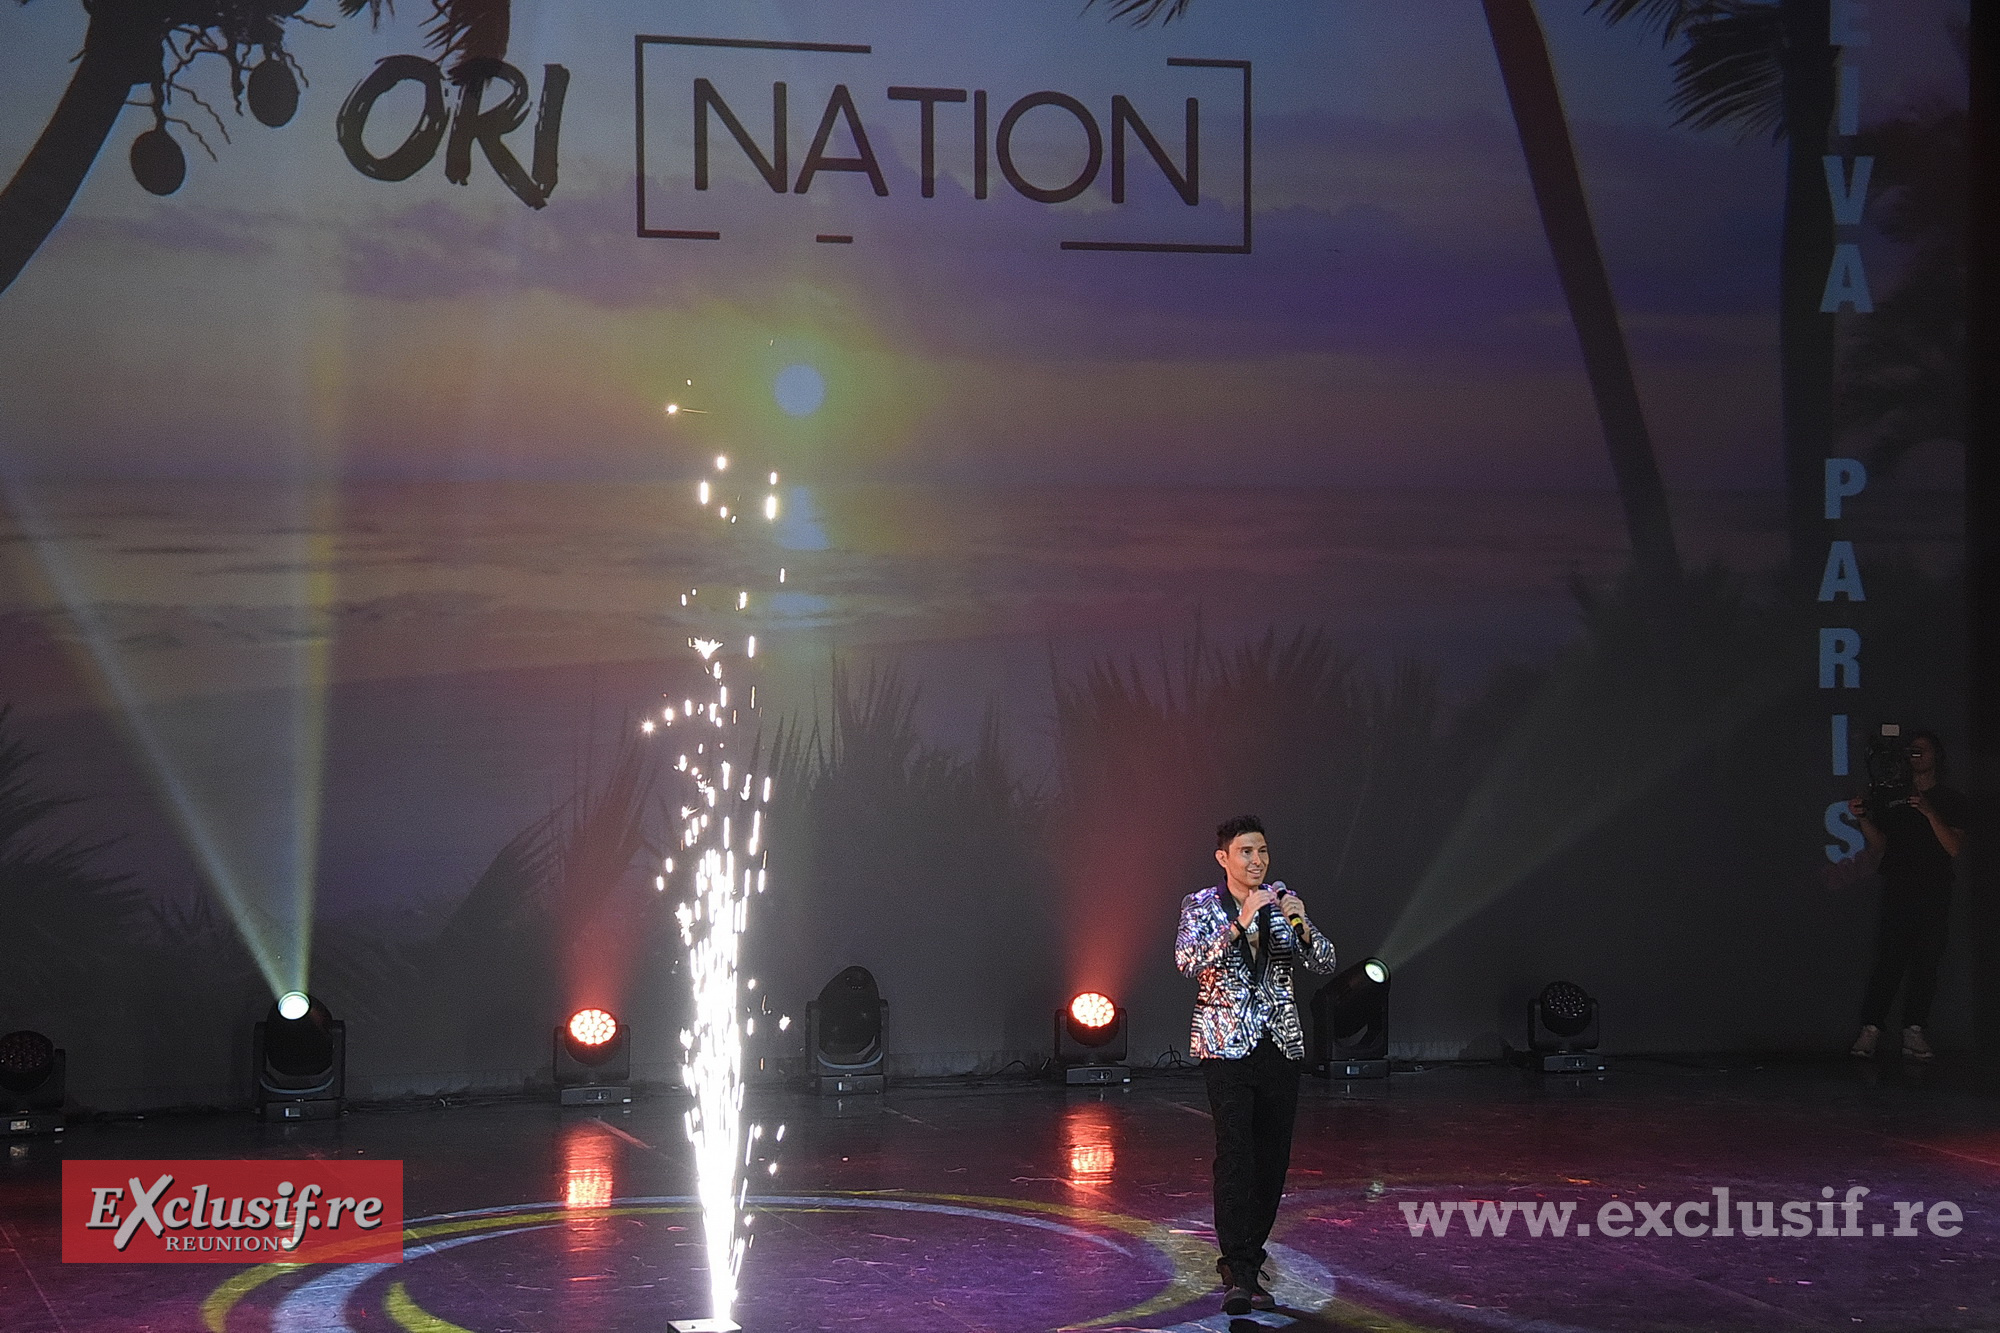 Ken Carlter a aussi dévoilé son nouveau hit ; "Ori Nation" (la nation de la danse tahitienne).